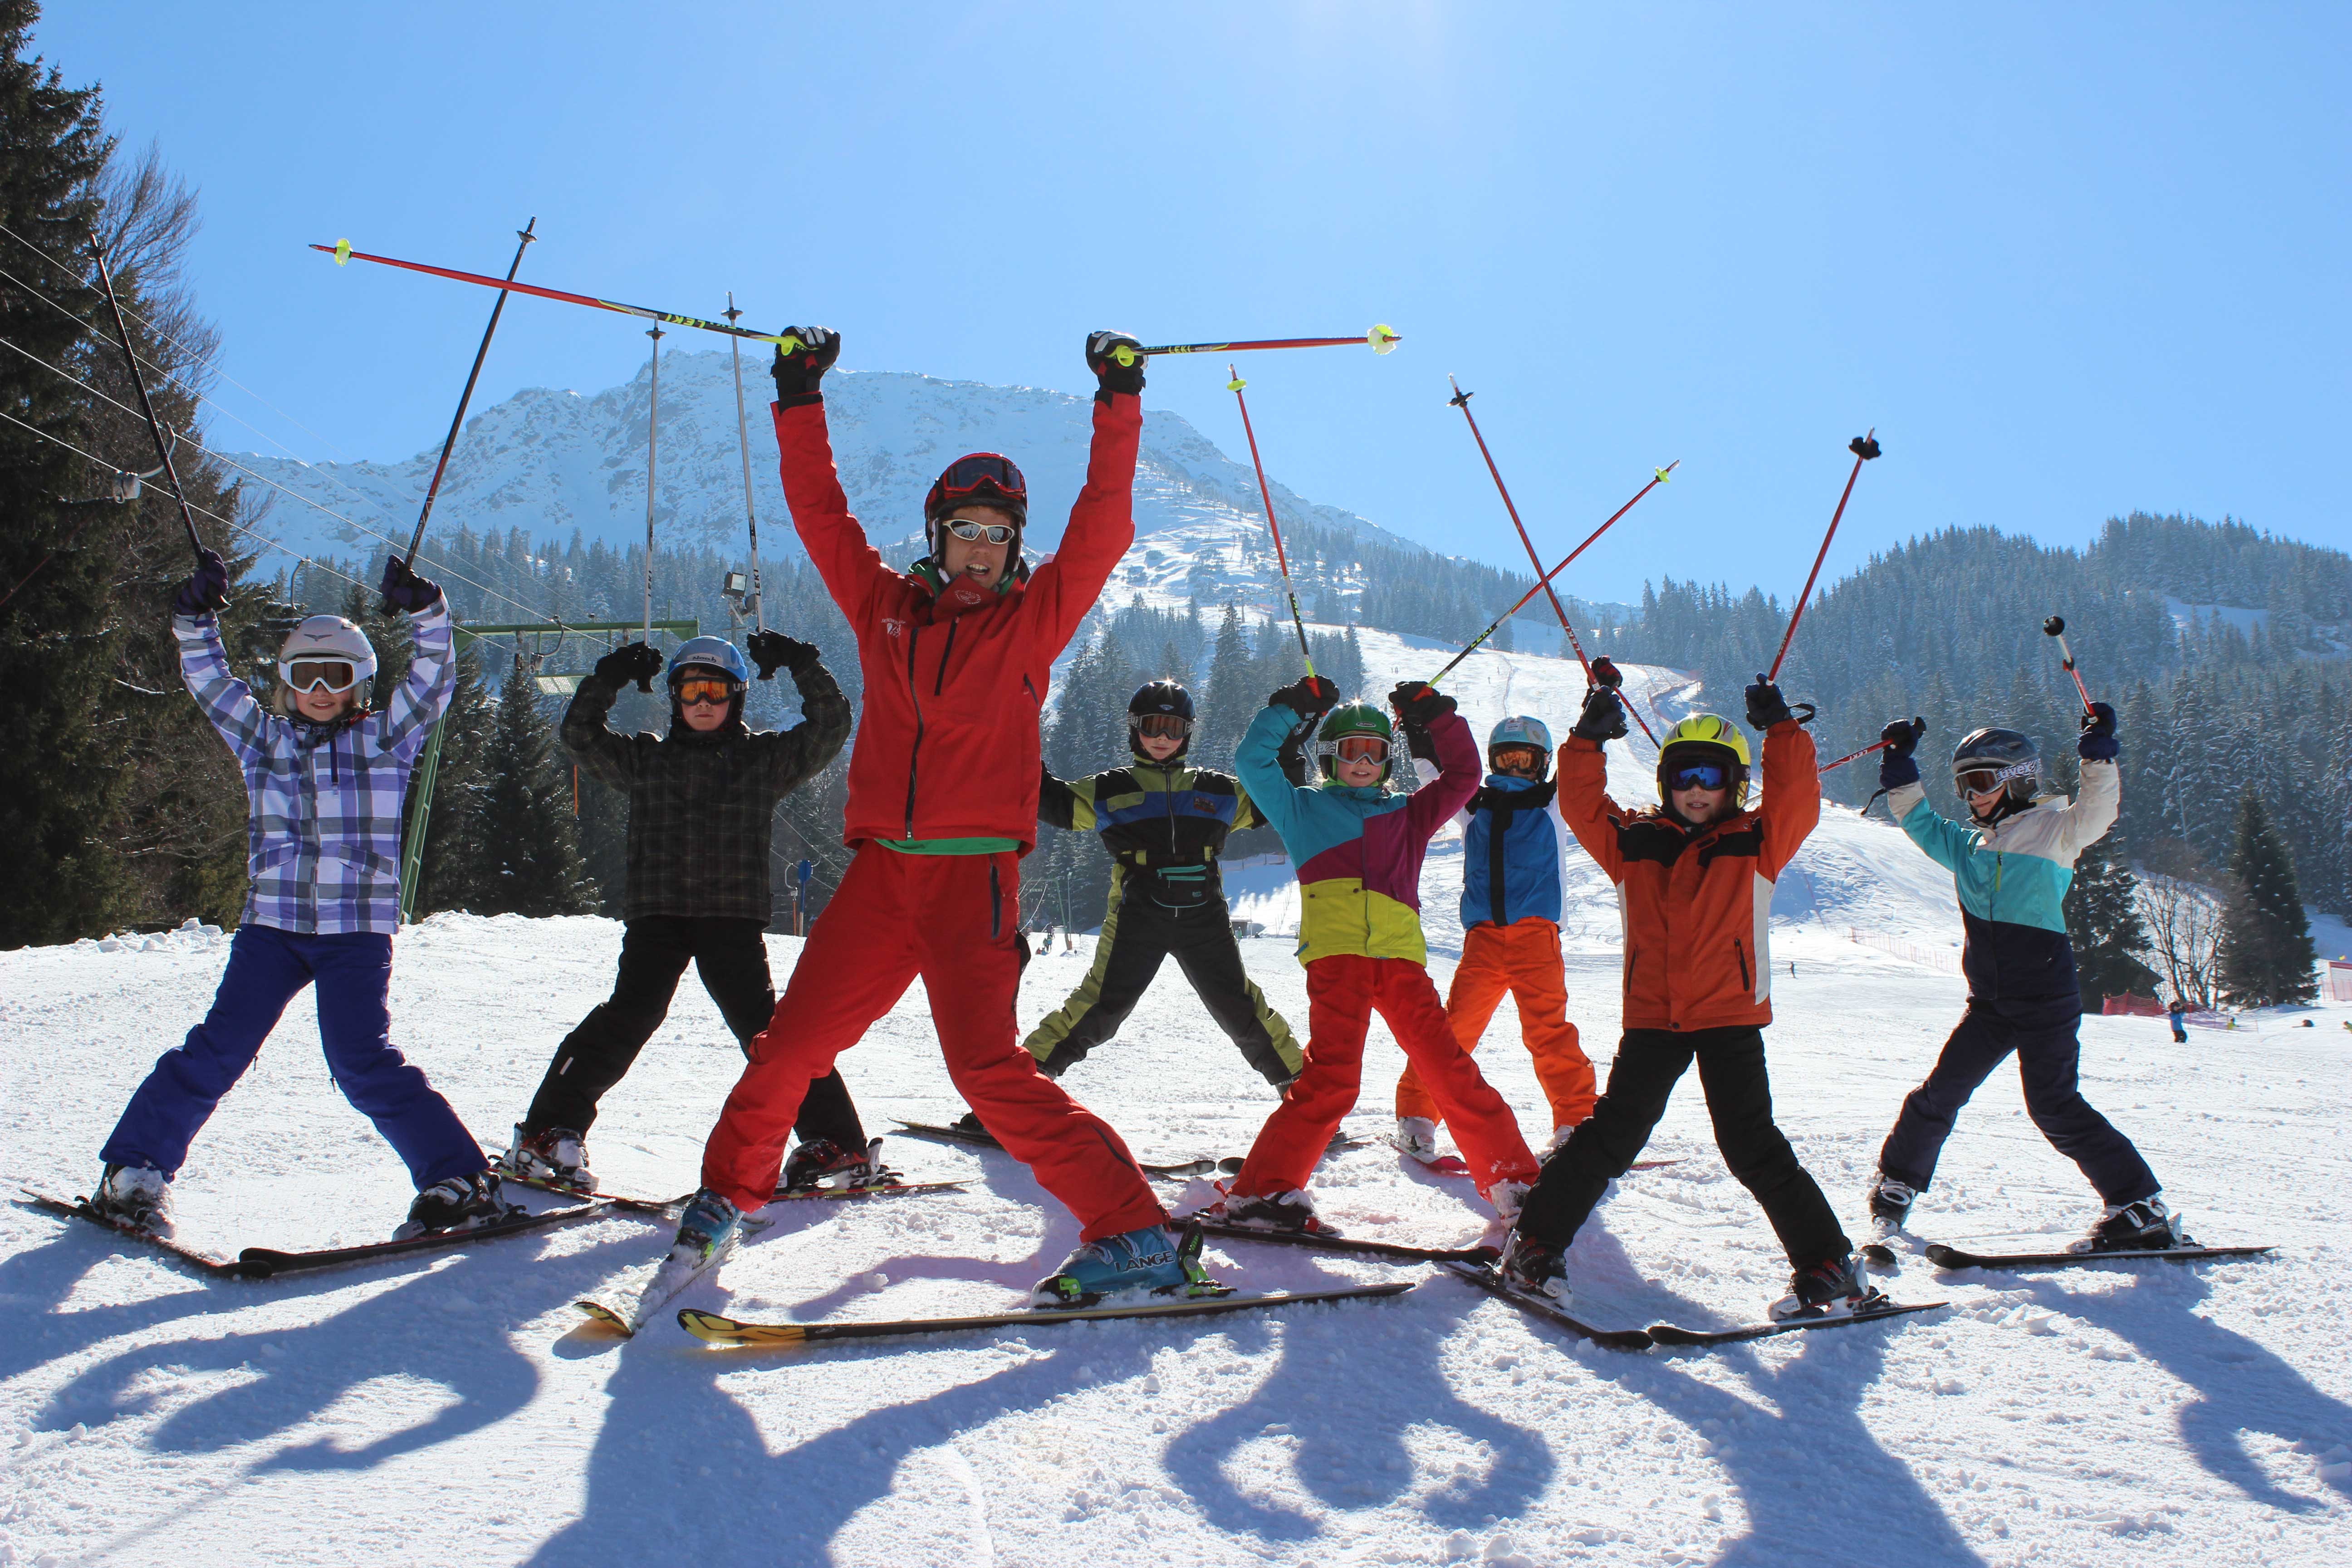 Skicursus kinderen